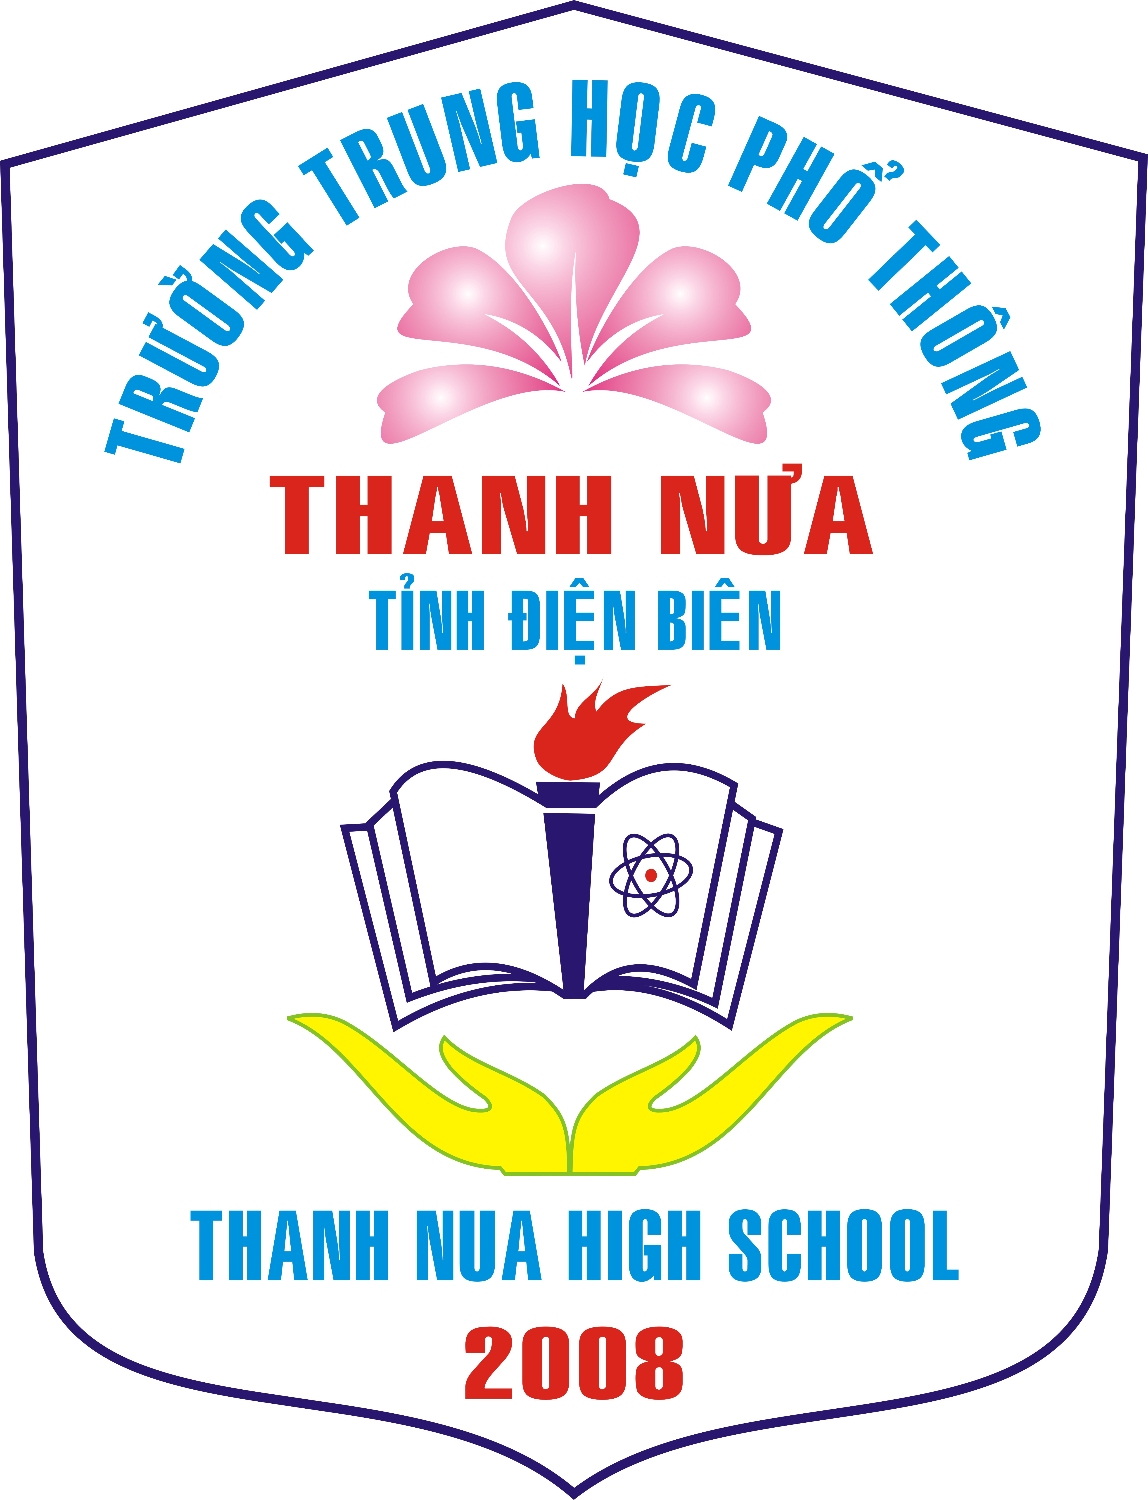 Giới thiệu về trường THPT Thanh Nưa